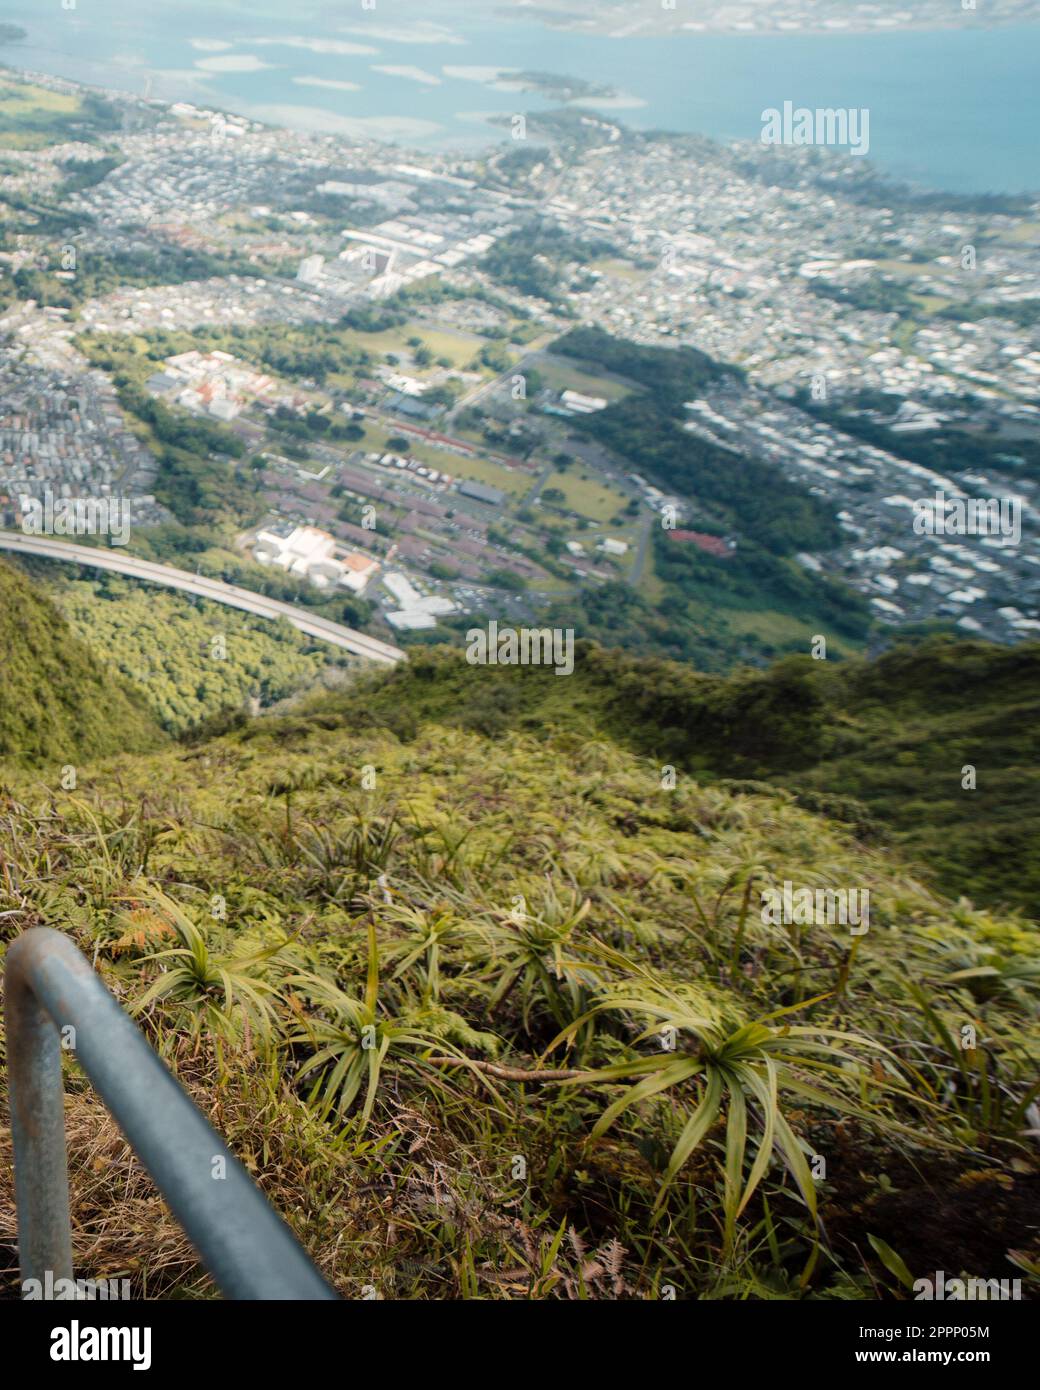 Homme randonnée Stairway to Heaven (Haiku Stairs) sur Oahu, Hawaï. Photo de haute qualité. Vue sur les escaliers. Banque D'Images